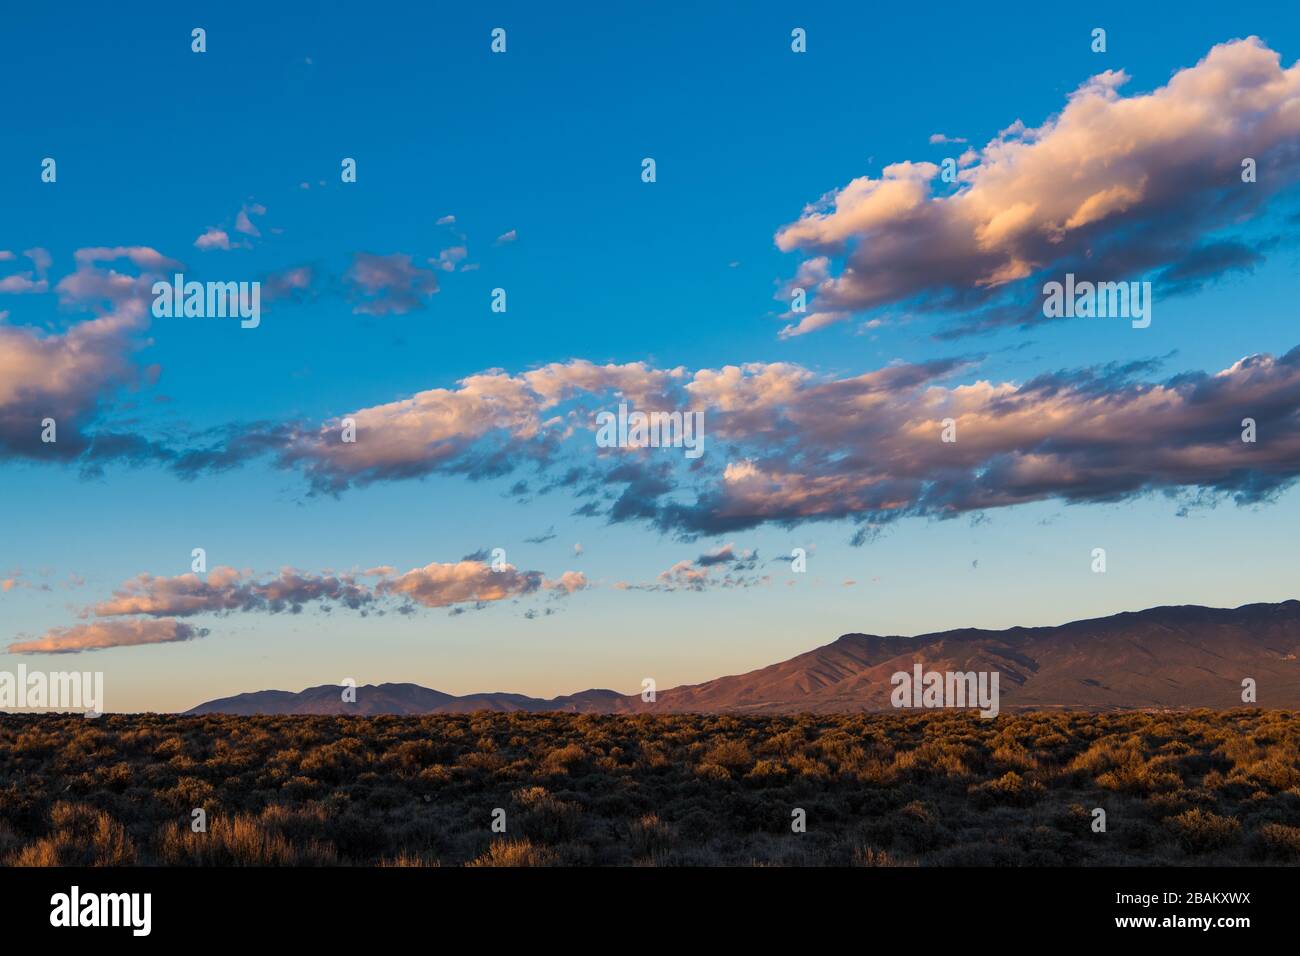 La hermosa puesta de sol proyecta colores y tonos púrpura y amarillo en las nubes y en las montañas sangre de Cristo cerca de Taos, Nuevo México, Estados Unidos Foto de stock